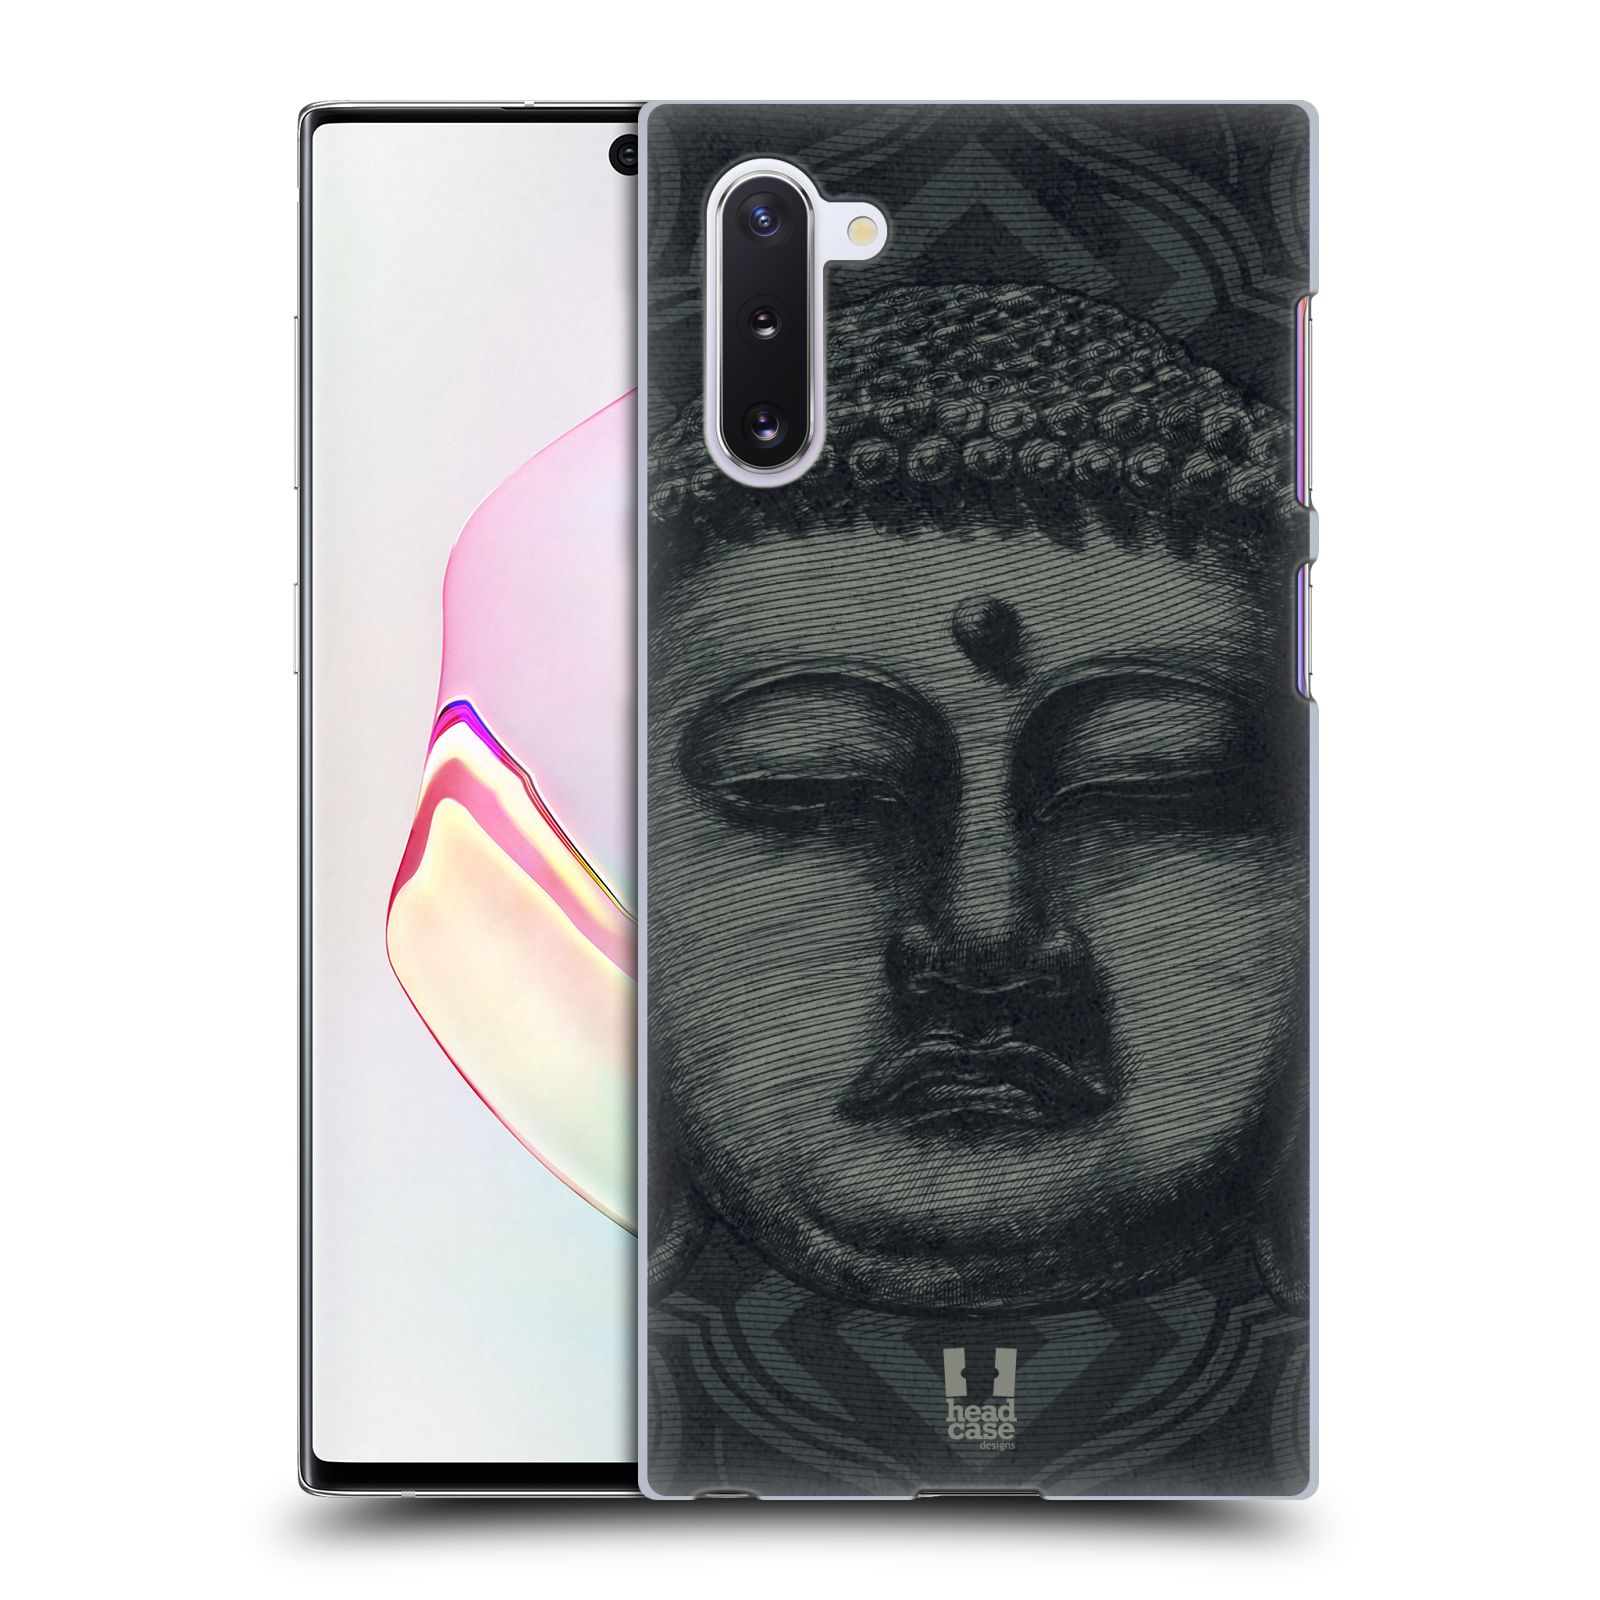 Pouzdro na mobil Samsung Galaxy Note 10 - HEAD CASE - vzor BUDDHA KAMAKURA tvář